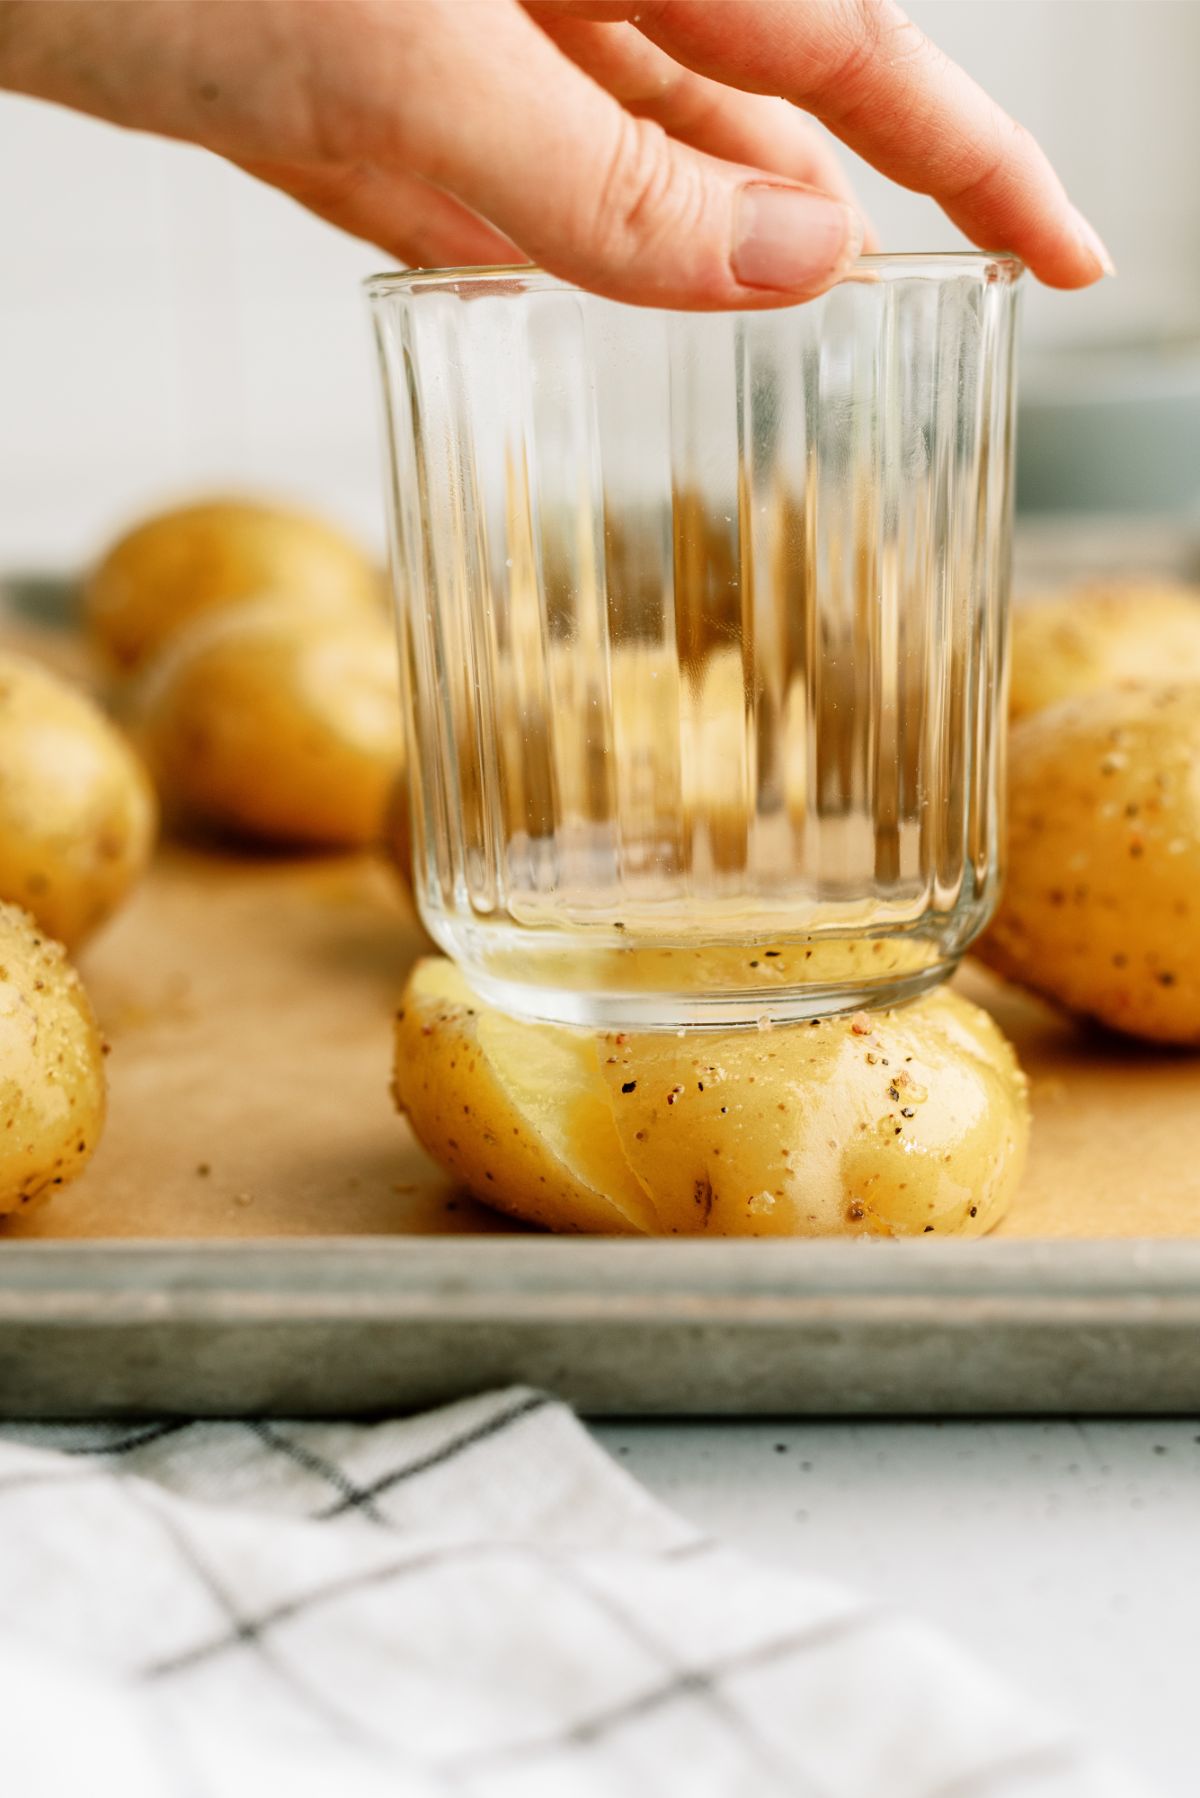 Smashing potatoes with a glass bottom